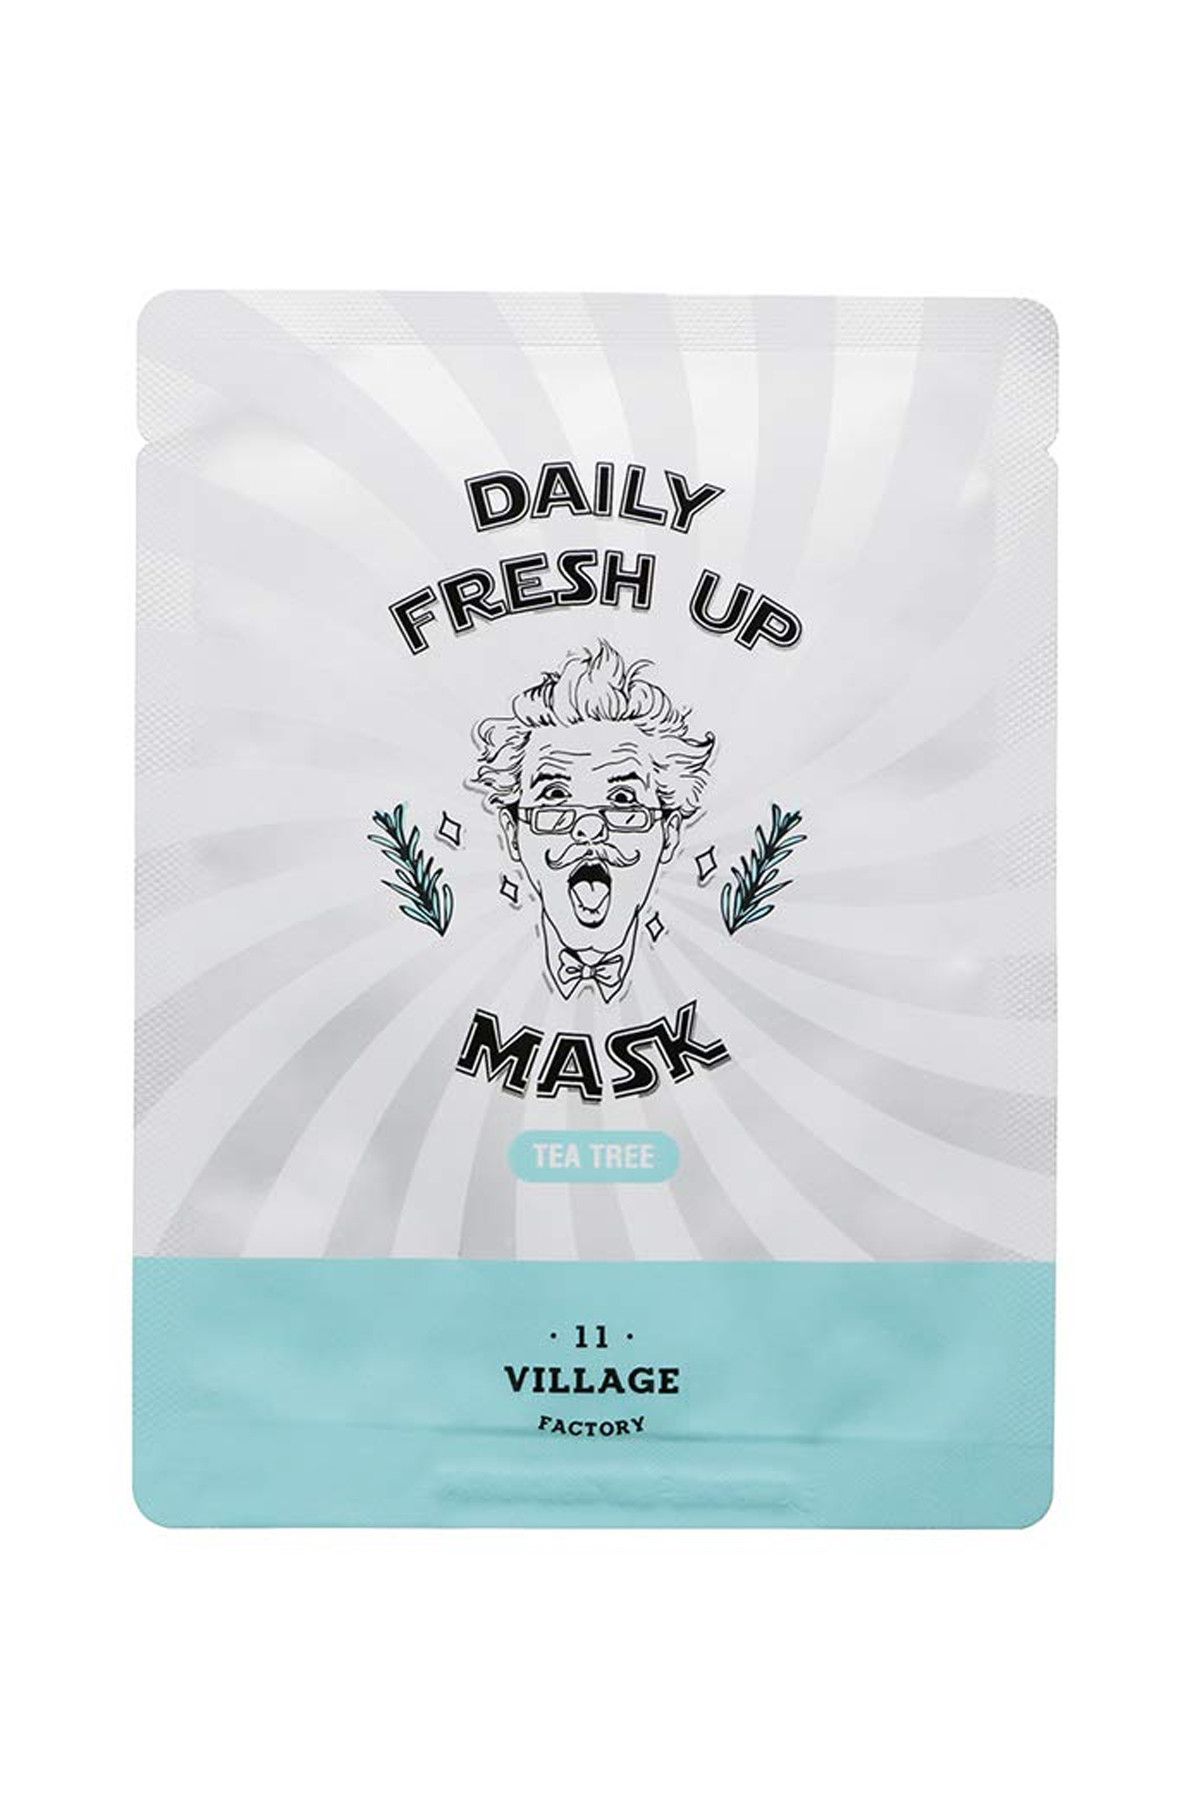 Village 11 Factory Çay Ağacı Maskesi - Daily Fresh Up Mask Tea Tree 20 g 8809587520367